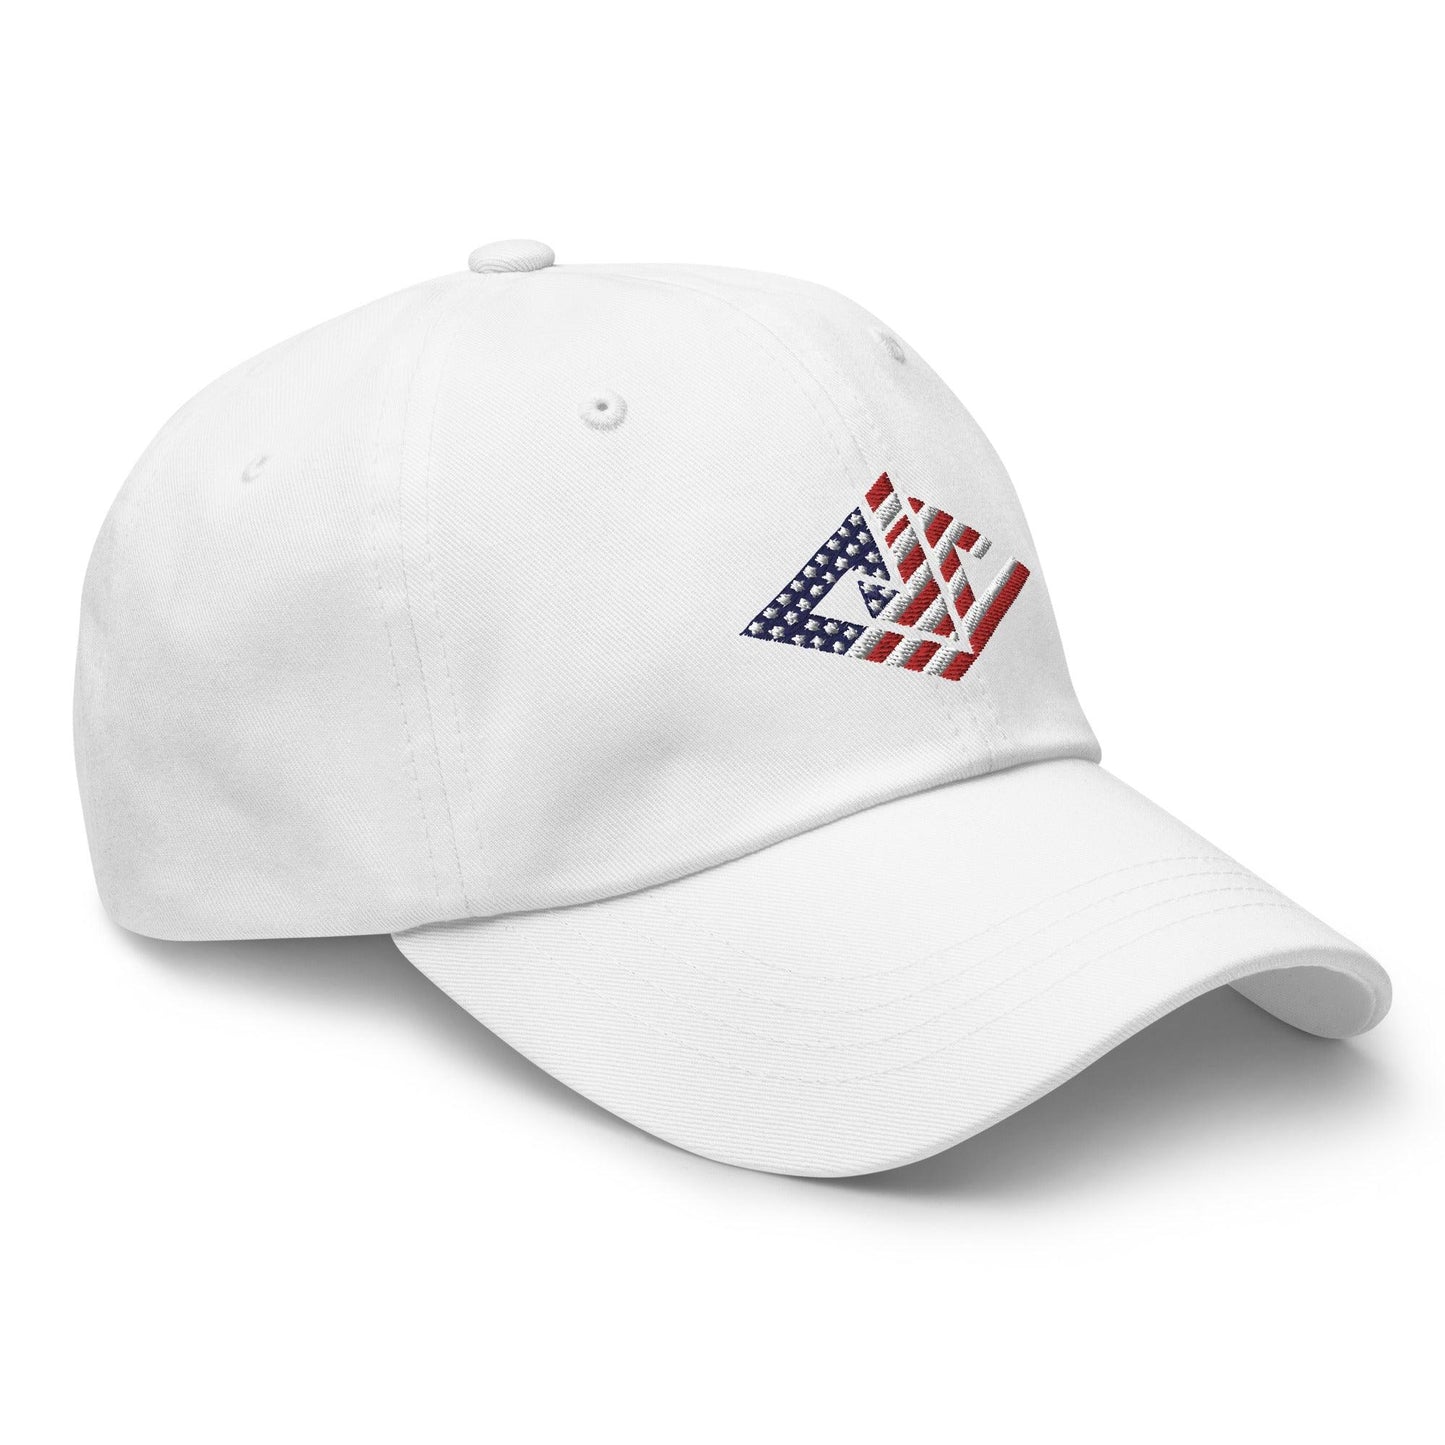 CJ Cummings “Signature” hat - Fan Arch